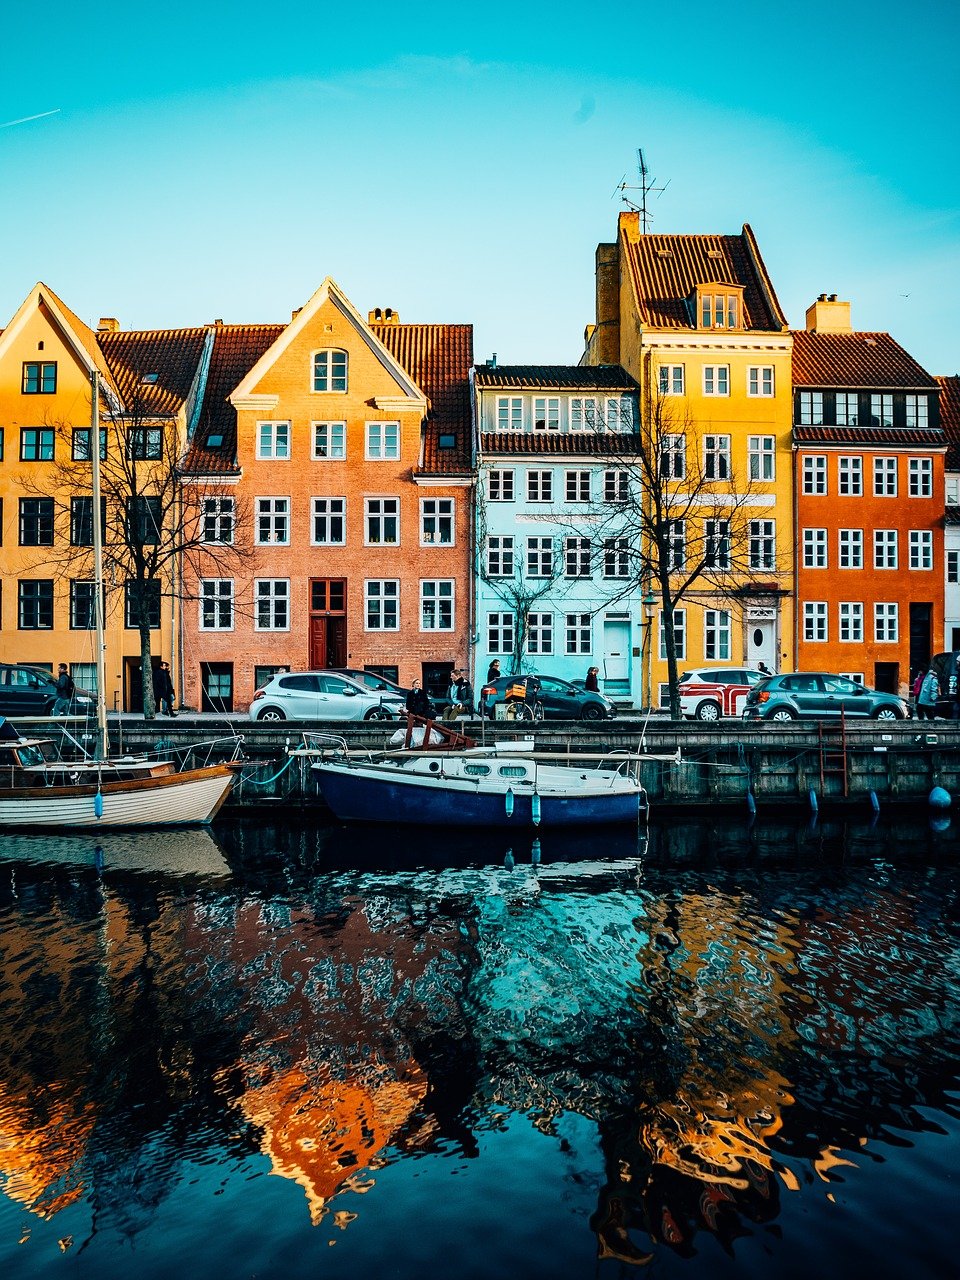 Почему датчане не моют овощи и фрукты? 7 интересных фактов о Дании